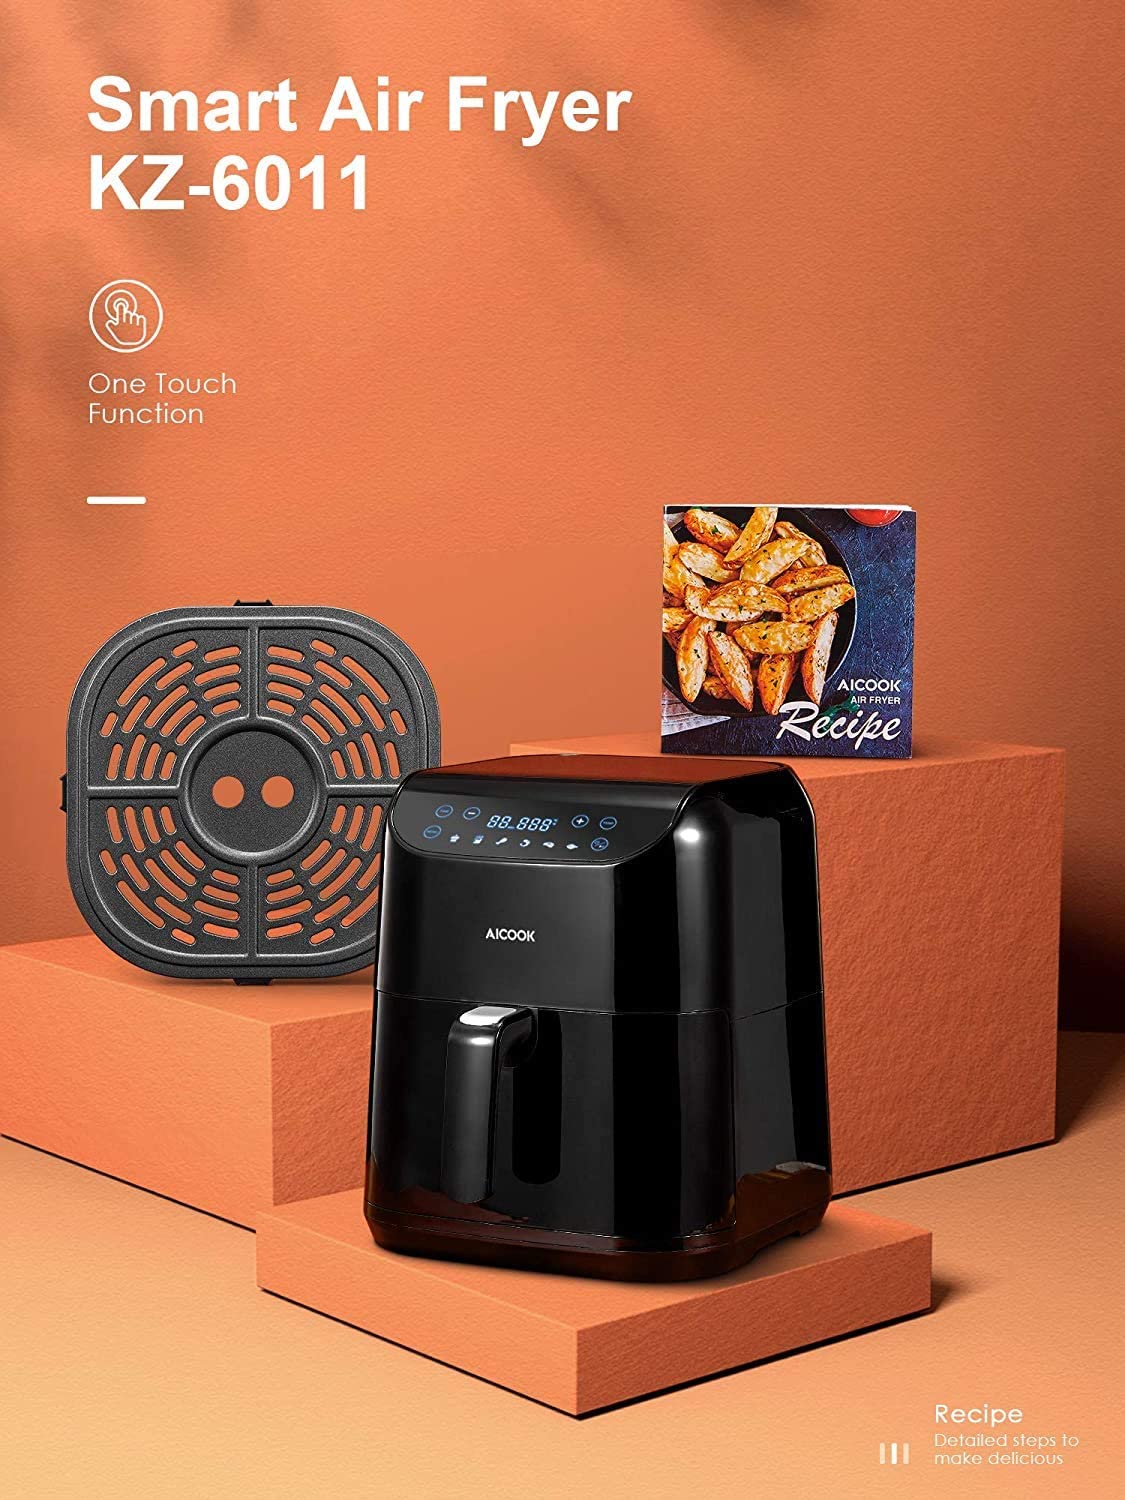 AICOOK 5.8QT Air Fryer, Smart Air Fryer, Digital Hot Oven Cooker, 2021